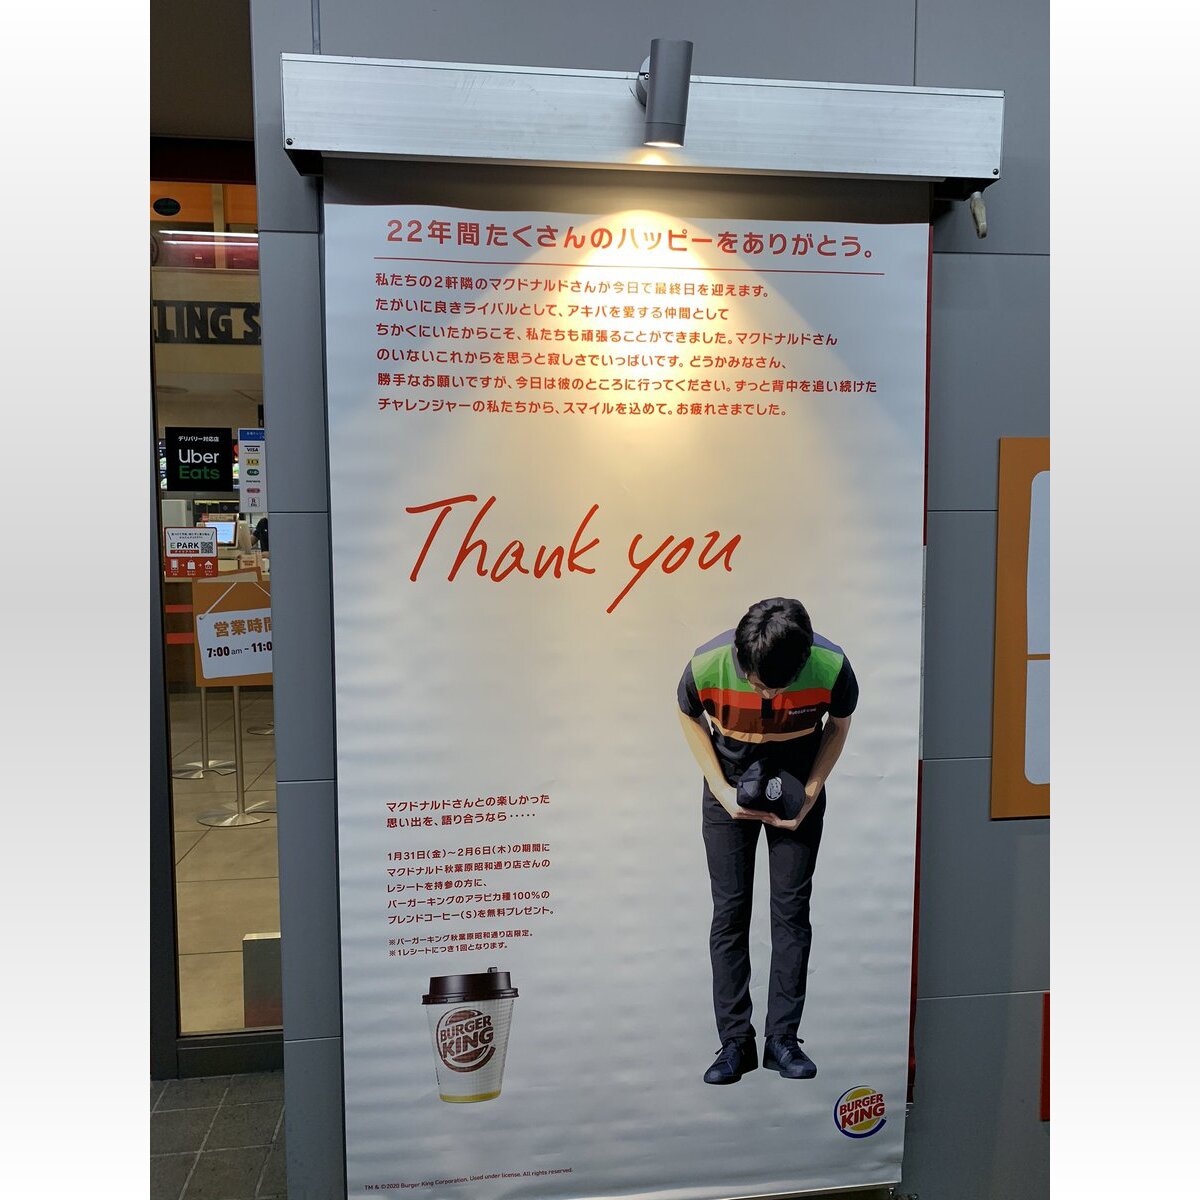 秋葉原のマクドナルド閉店 バーガーキングが健闘を称えるポスター でも縦読みすると 私たちの勝ち 広報 敬意を込めたエール 年1月31日 Biglobeニュース